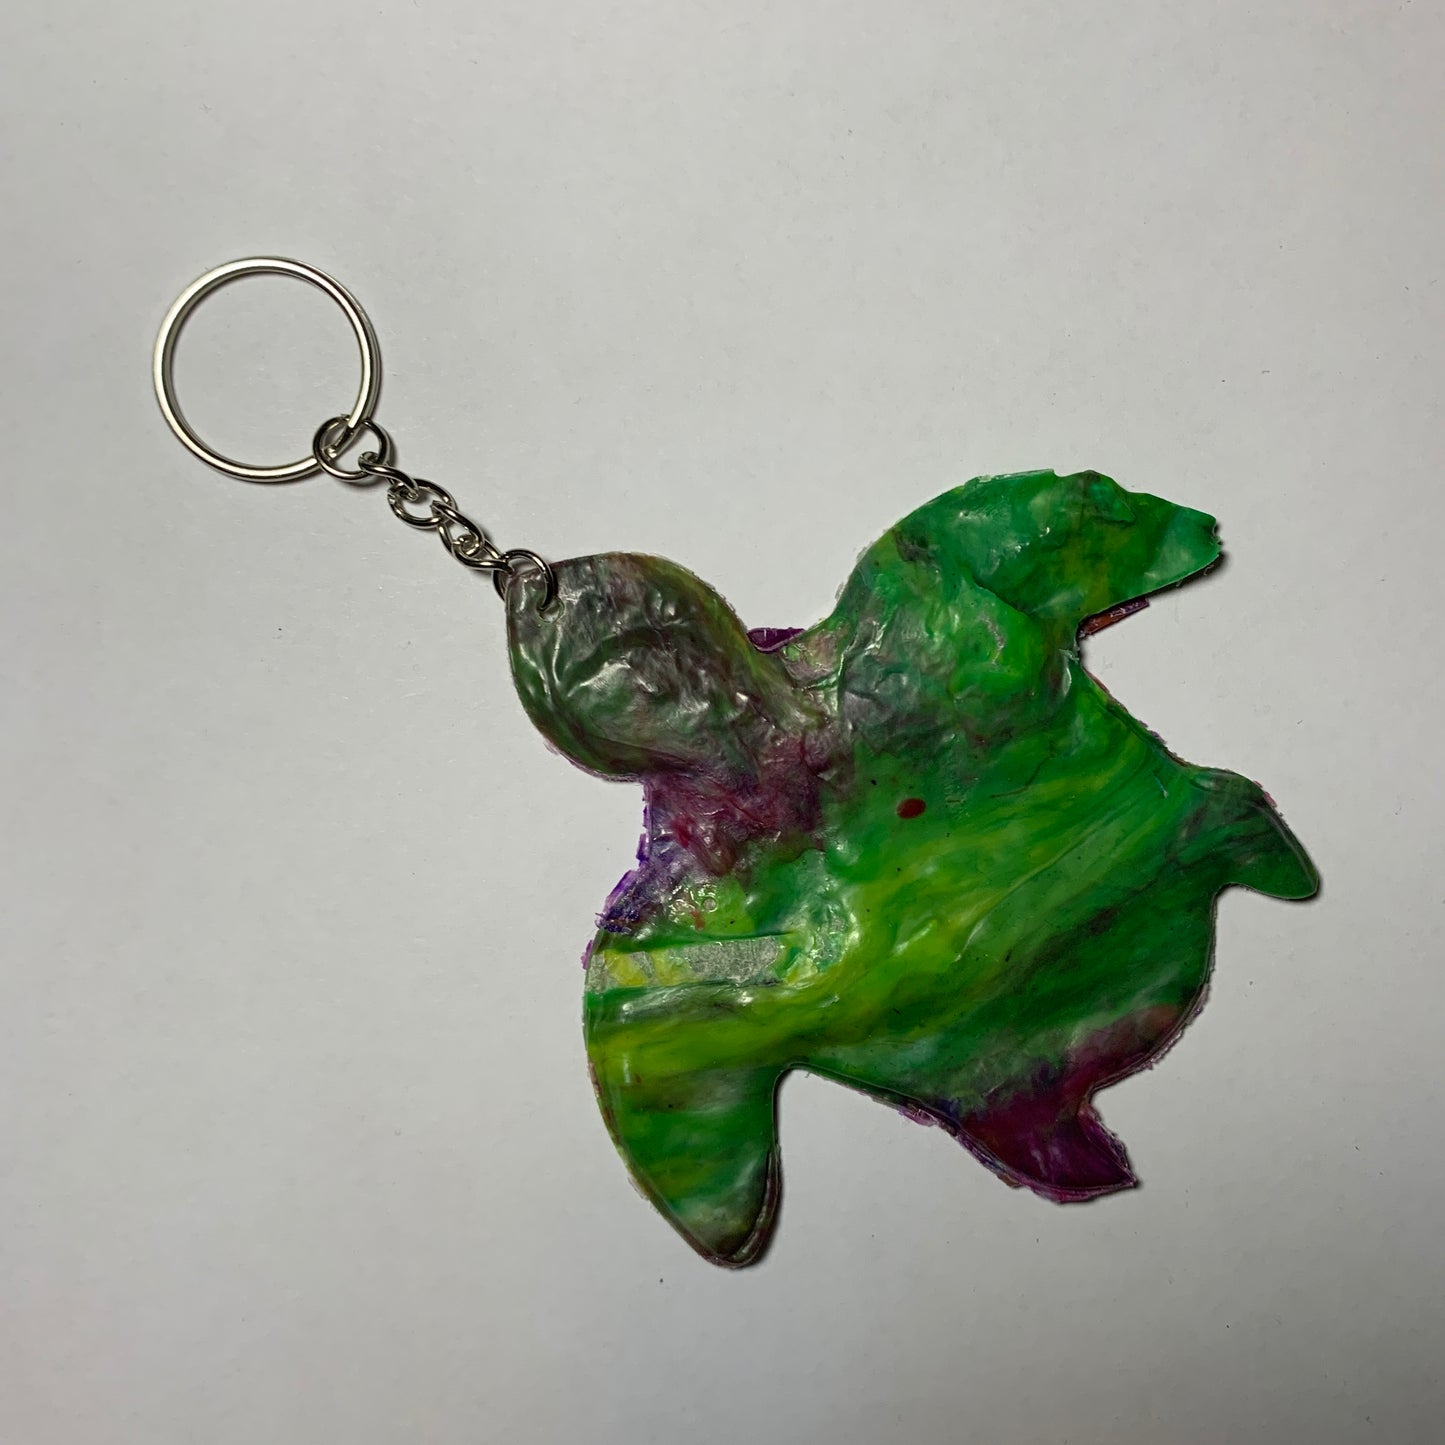 Animal Magic Keychains/Bag Charms